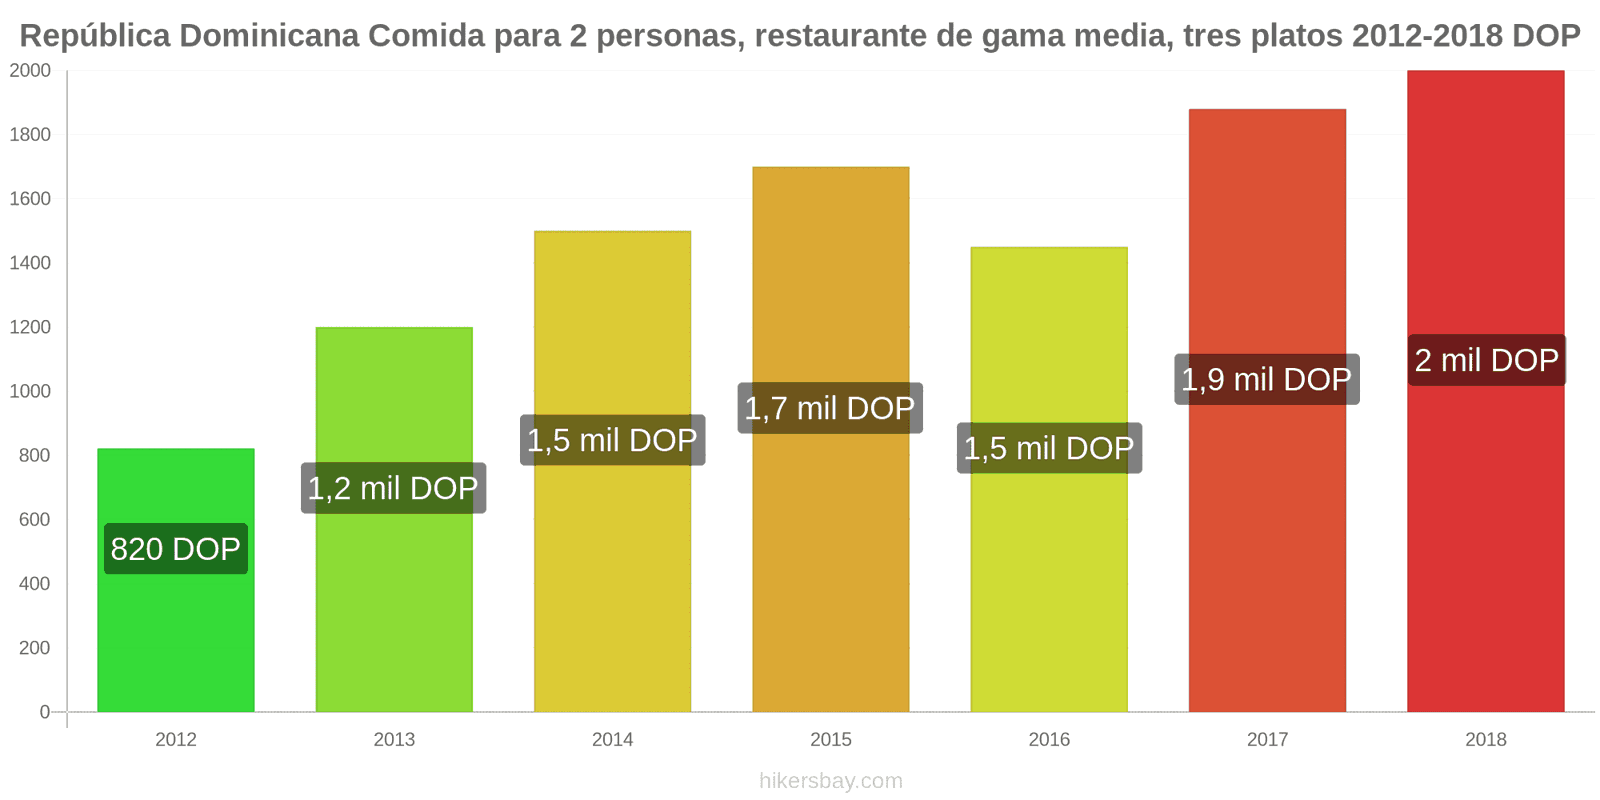 República Dominicana cambios de precios Comida para 2 personas, restaurante de gama media, tres platos hikersbay.com